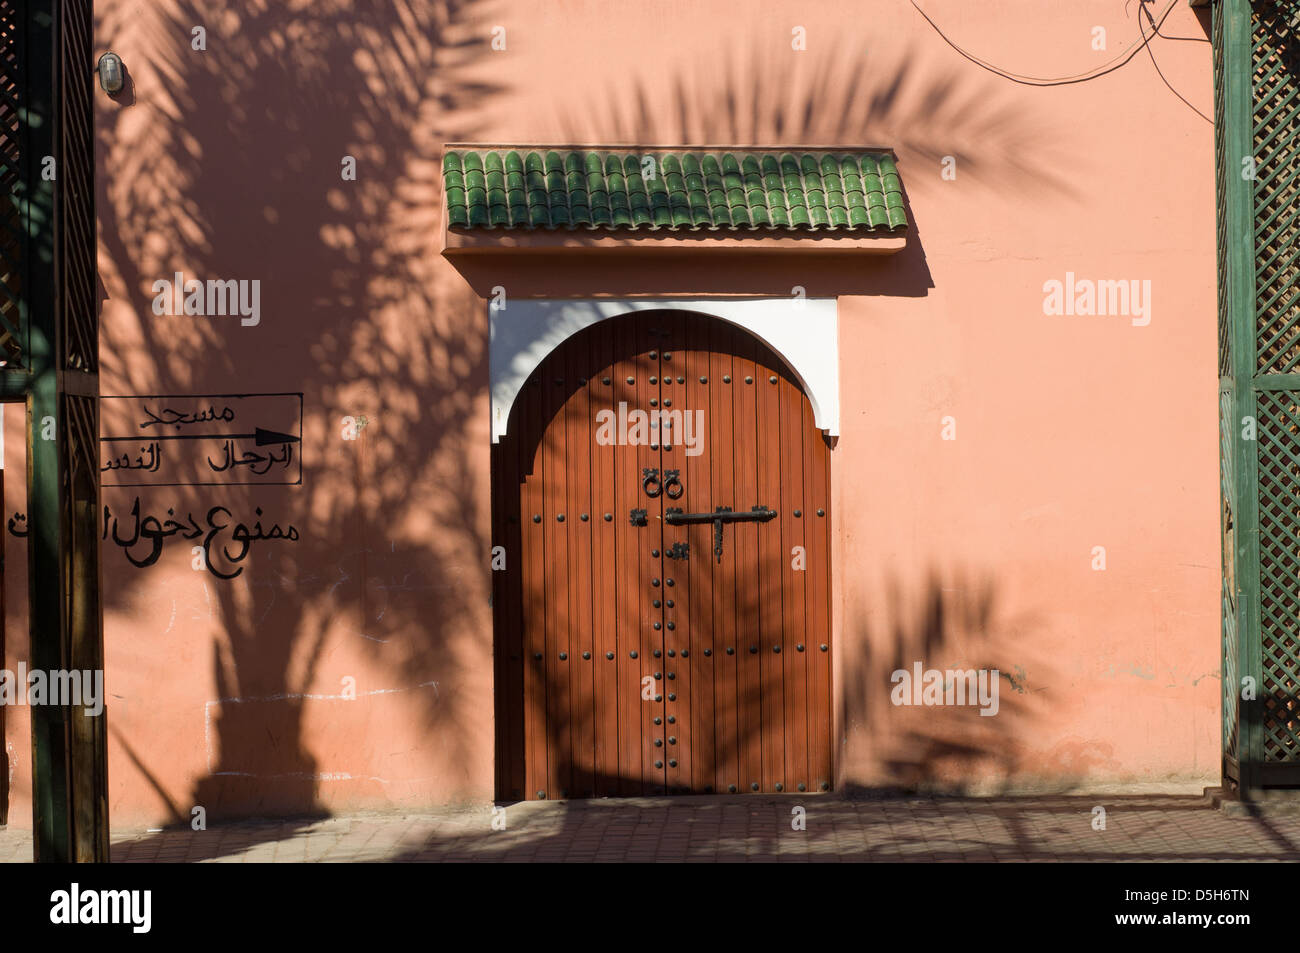 Ombra di Palm tree in una piazza nei pressi della Mellah, Marrakech, Marocco Foto Stock